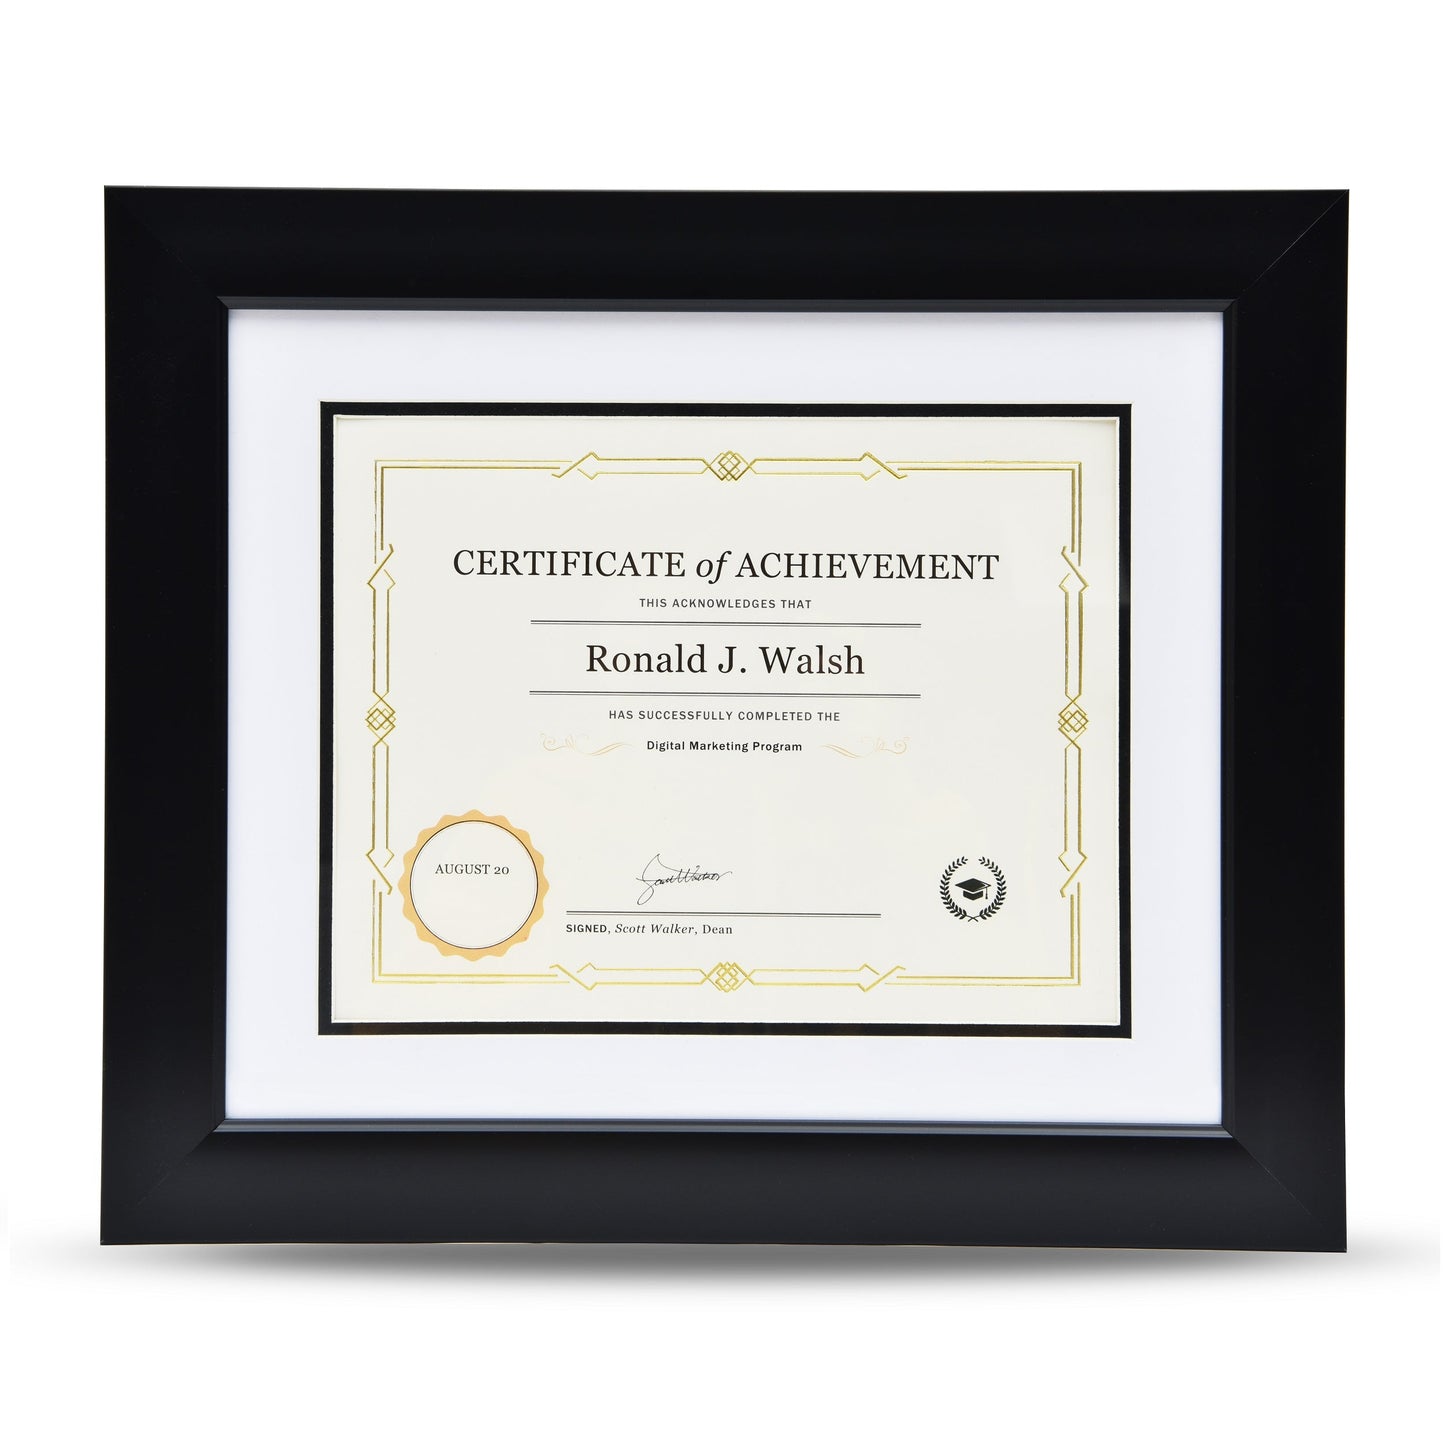 St. James® Awards & Certificate Frame/Diploma Frame/Document Frame, 16¼x 14¼" (43 x 36cm), Tuxedo Black with Double Mat White/Black